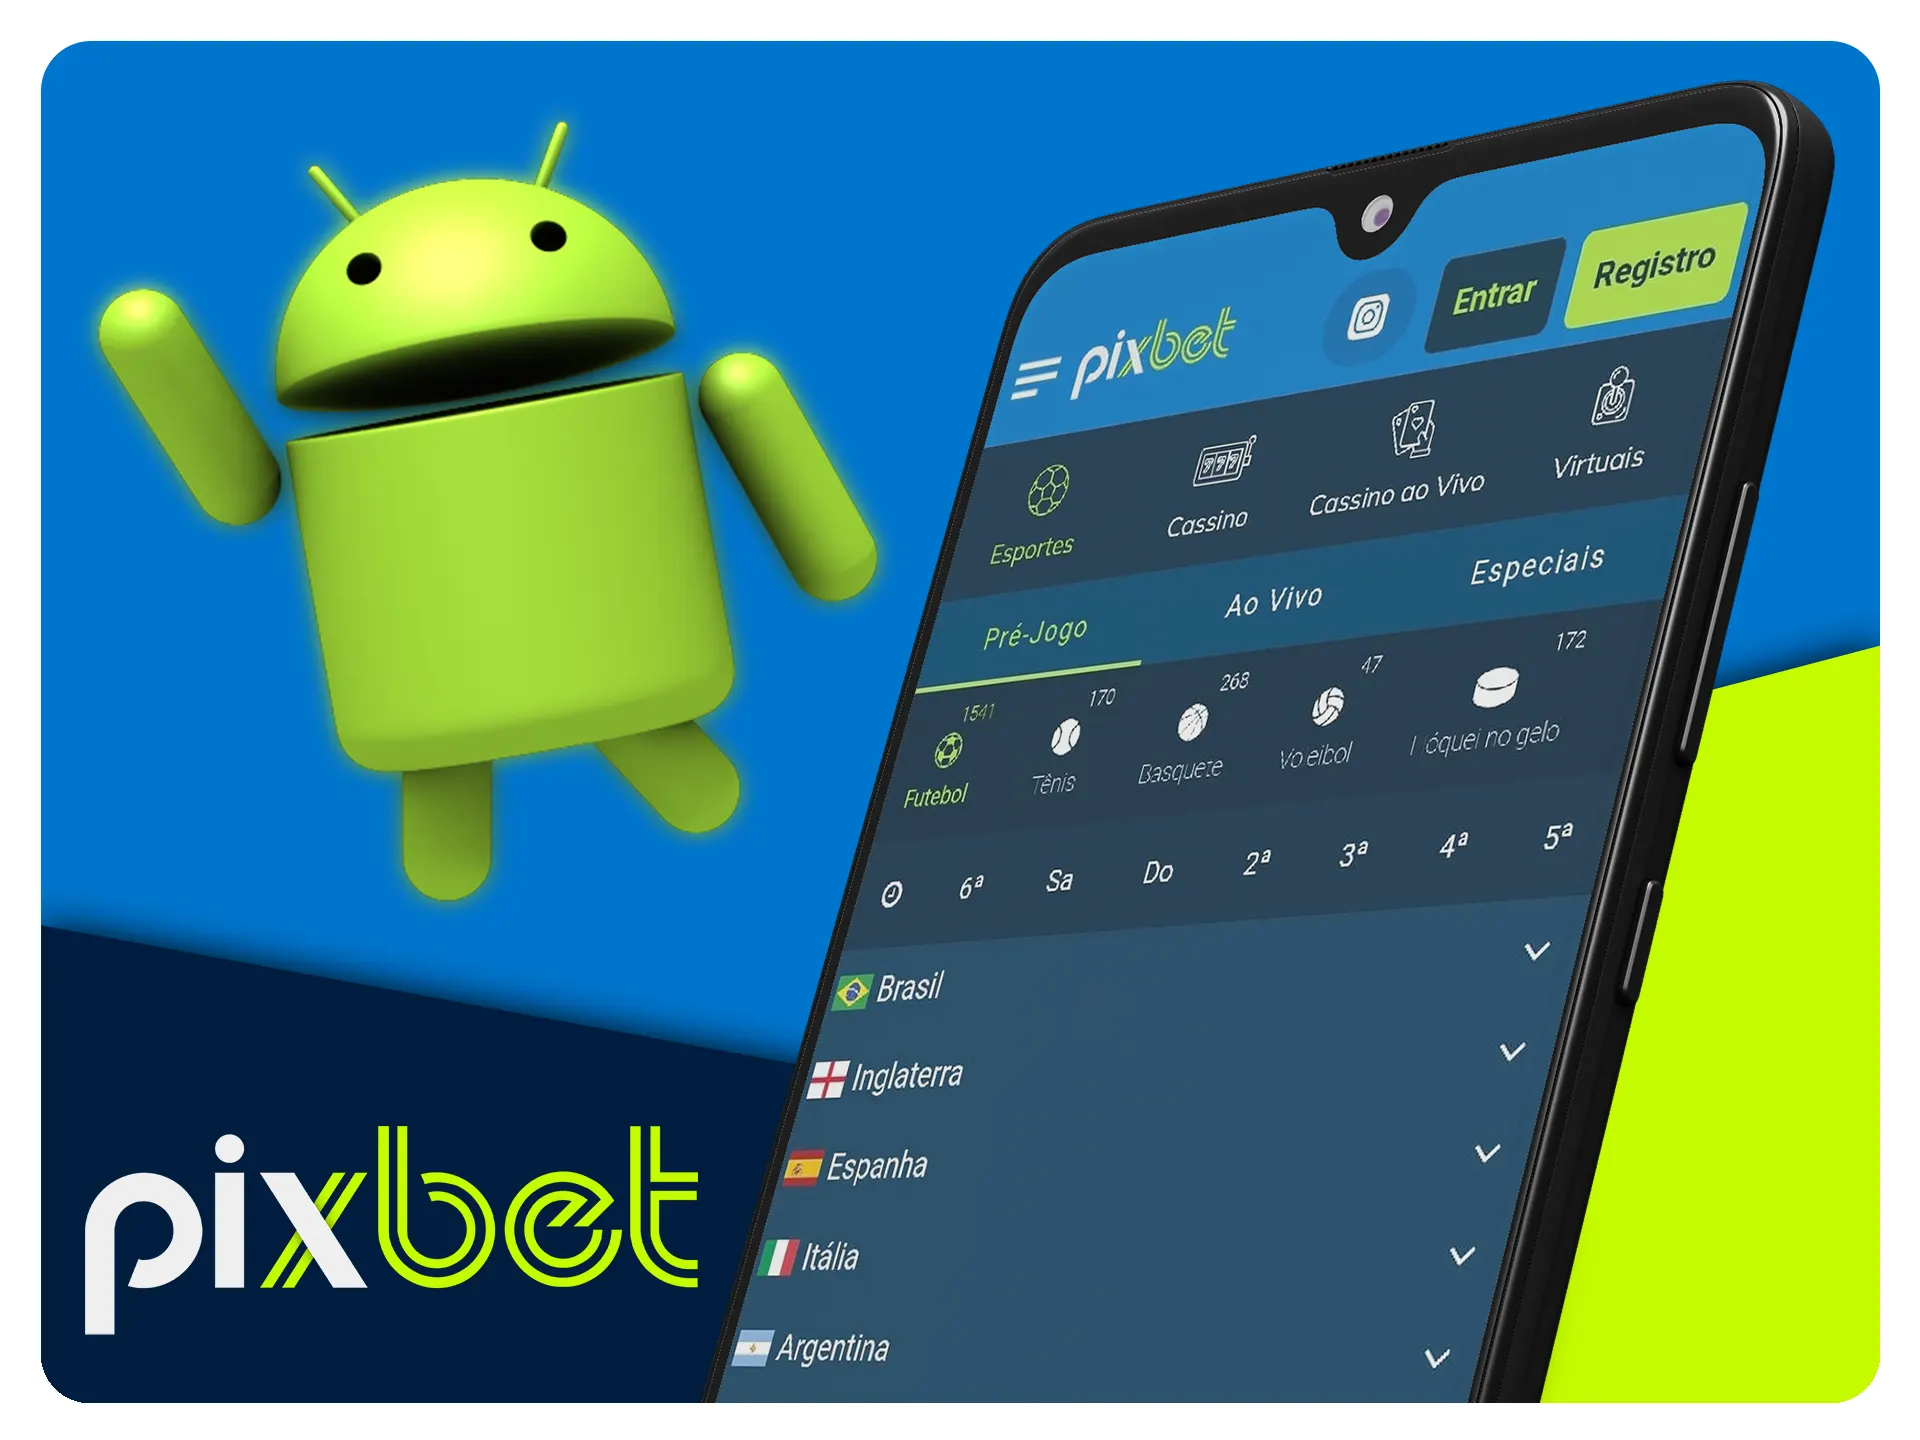 Pixbet » Faça o Download do Pixbet APK (Tutorial e Avaliação 2023)